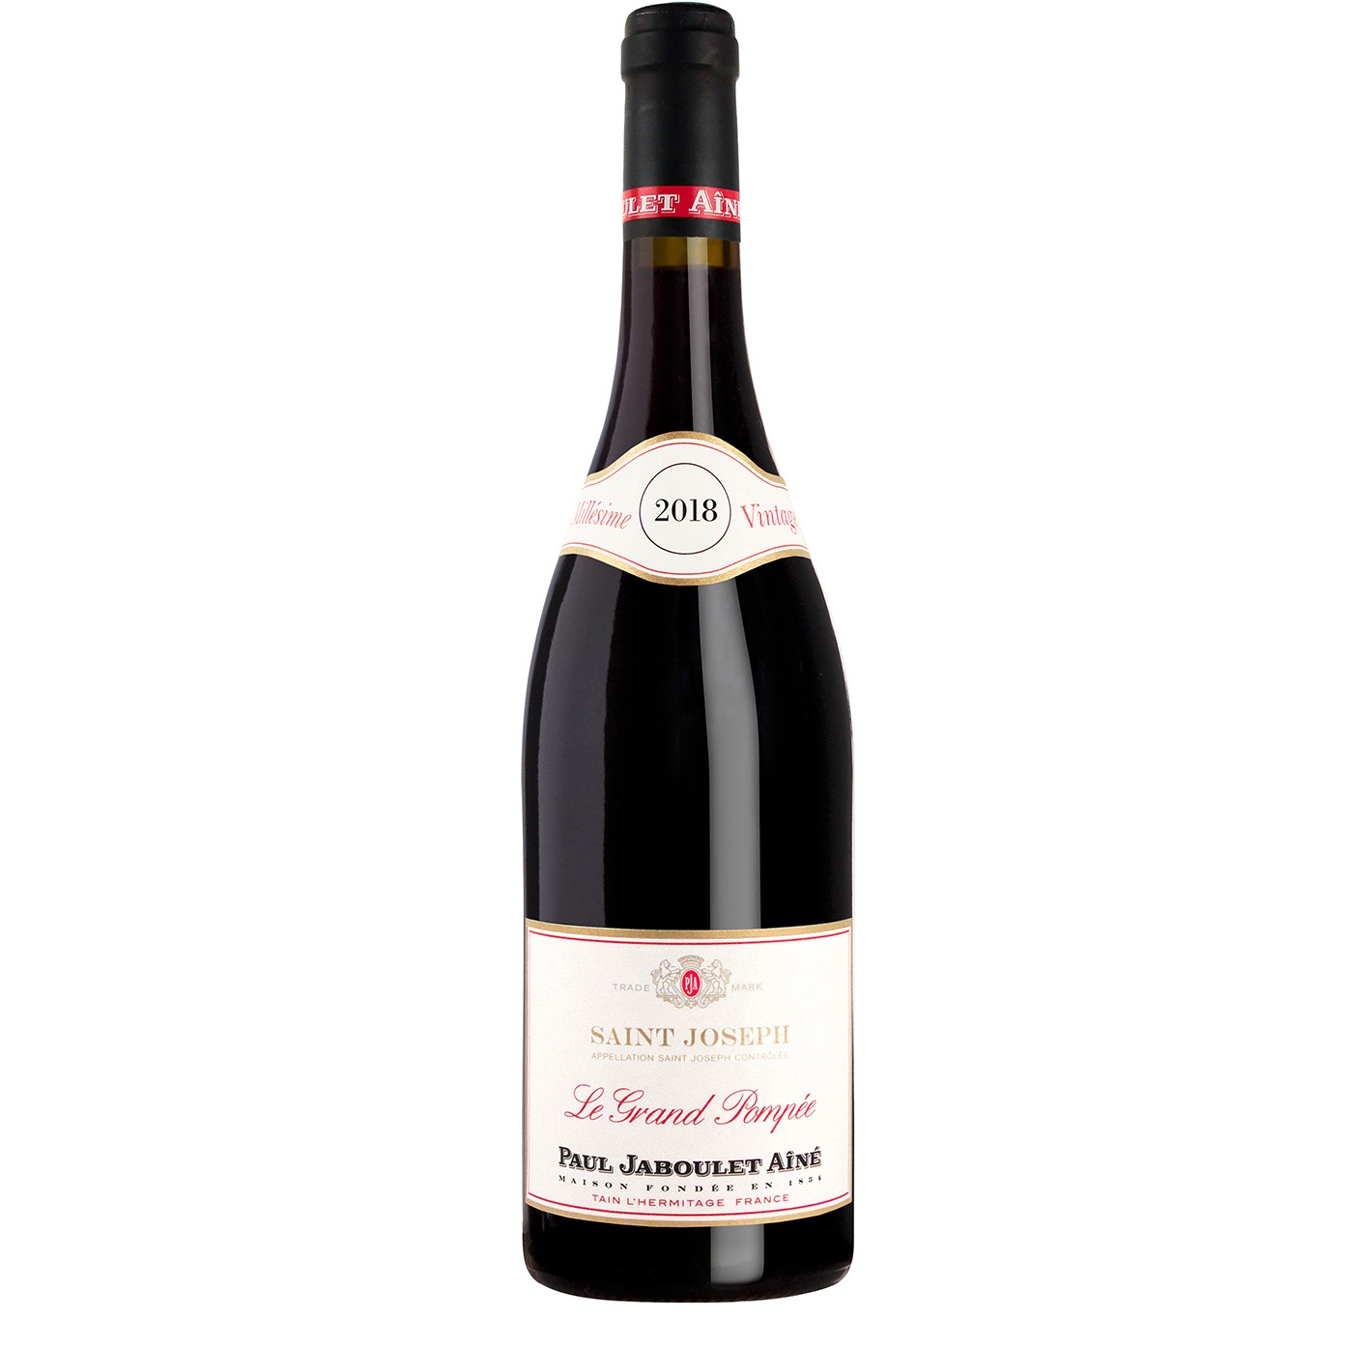 Paul Jaboulet Aîné Le Grand Pompée Saint-Joseph 2018 Red Wine